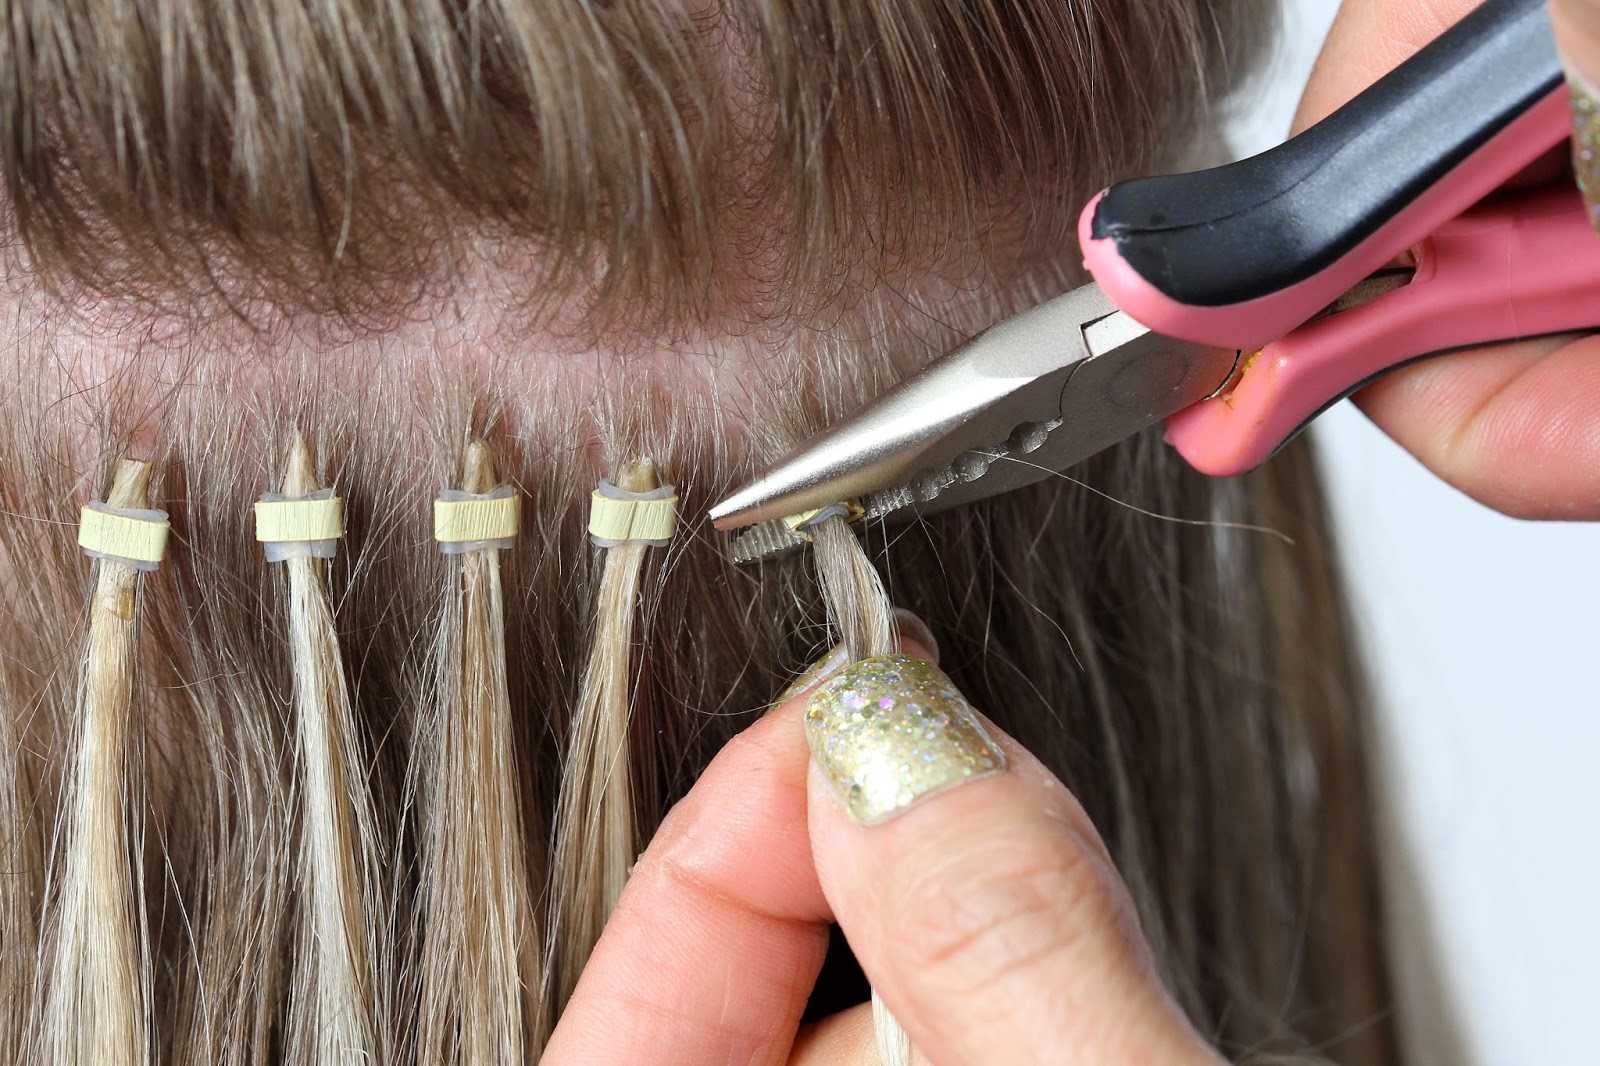 Как отрастить длинные волосы в домашних условиях: советы для девушек